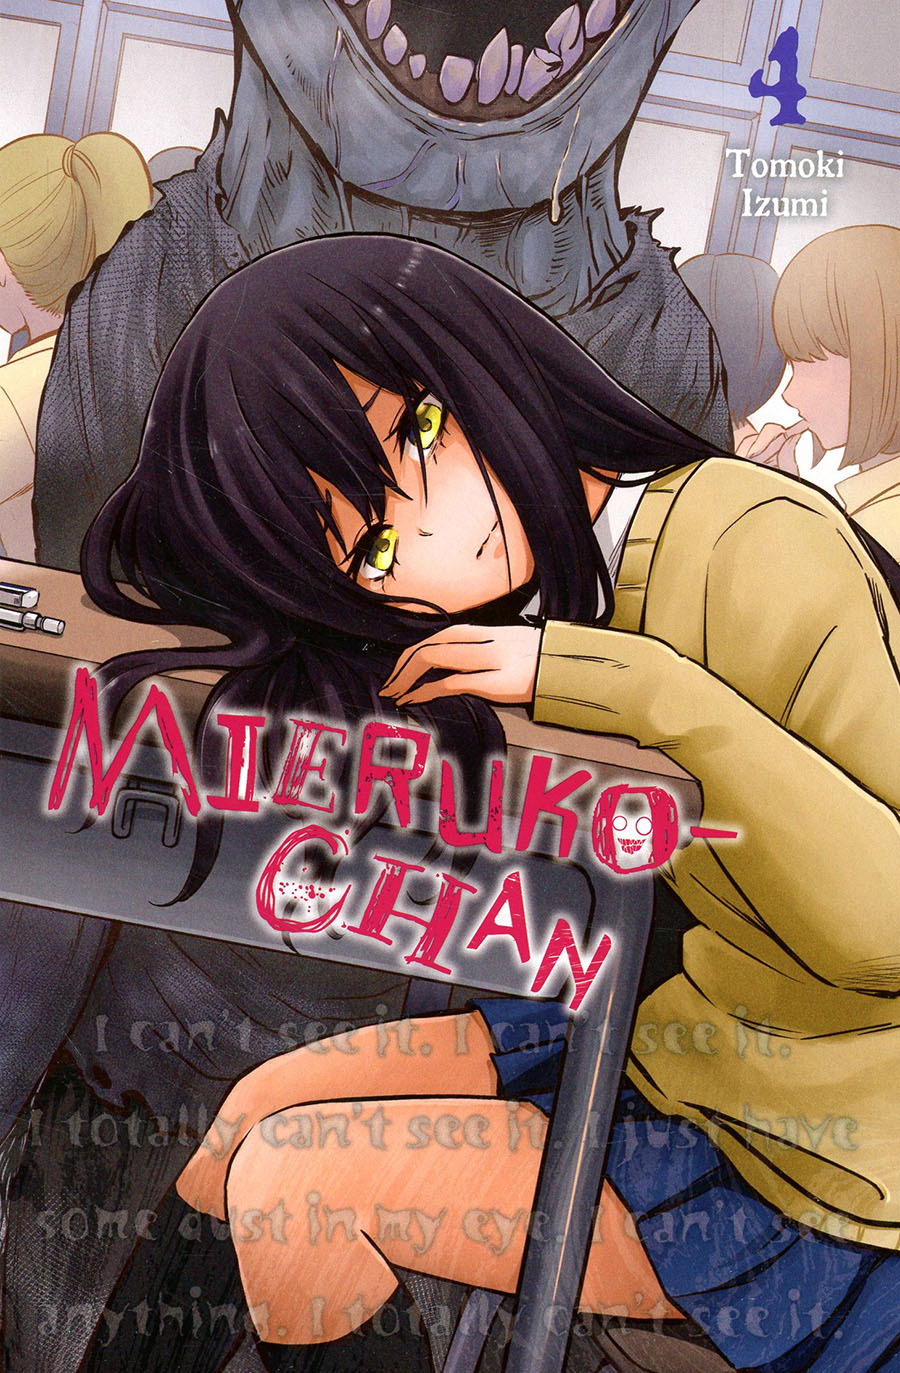 Mieruko-Chan Vol 4 GN